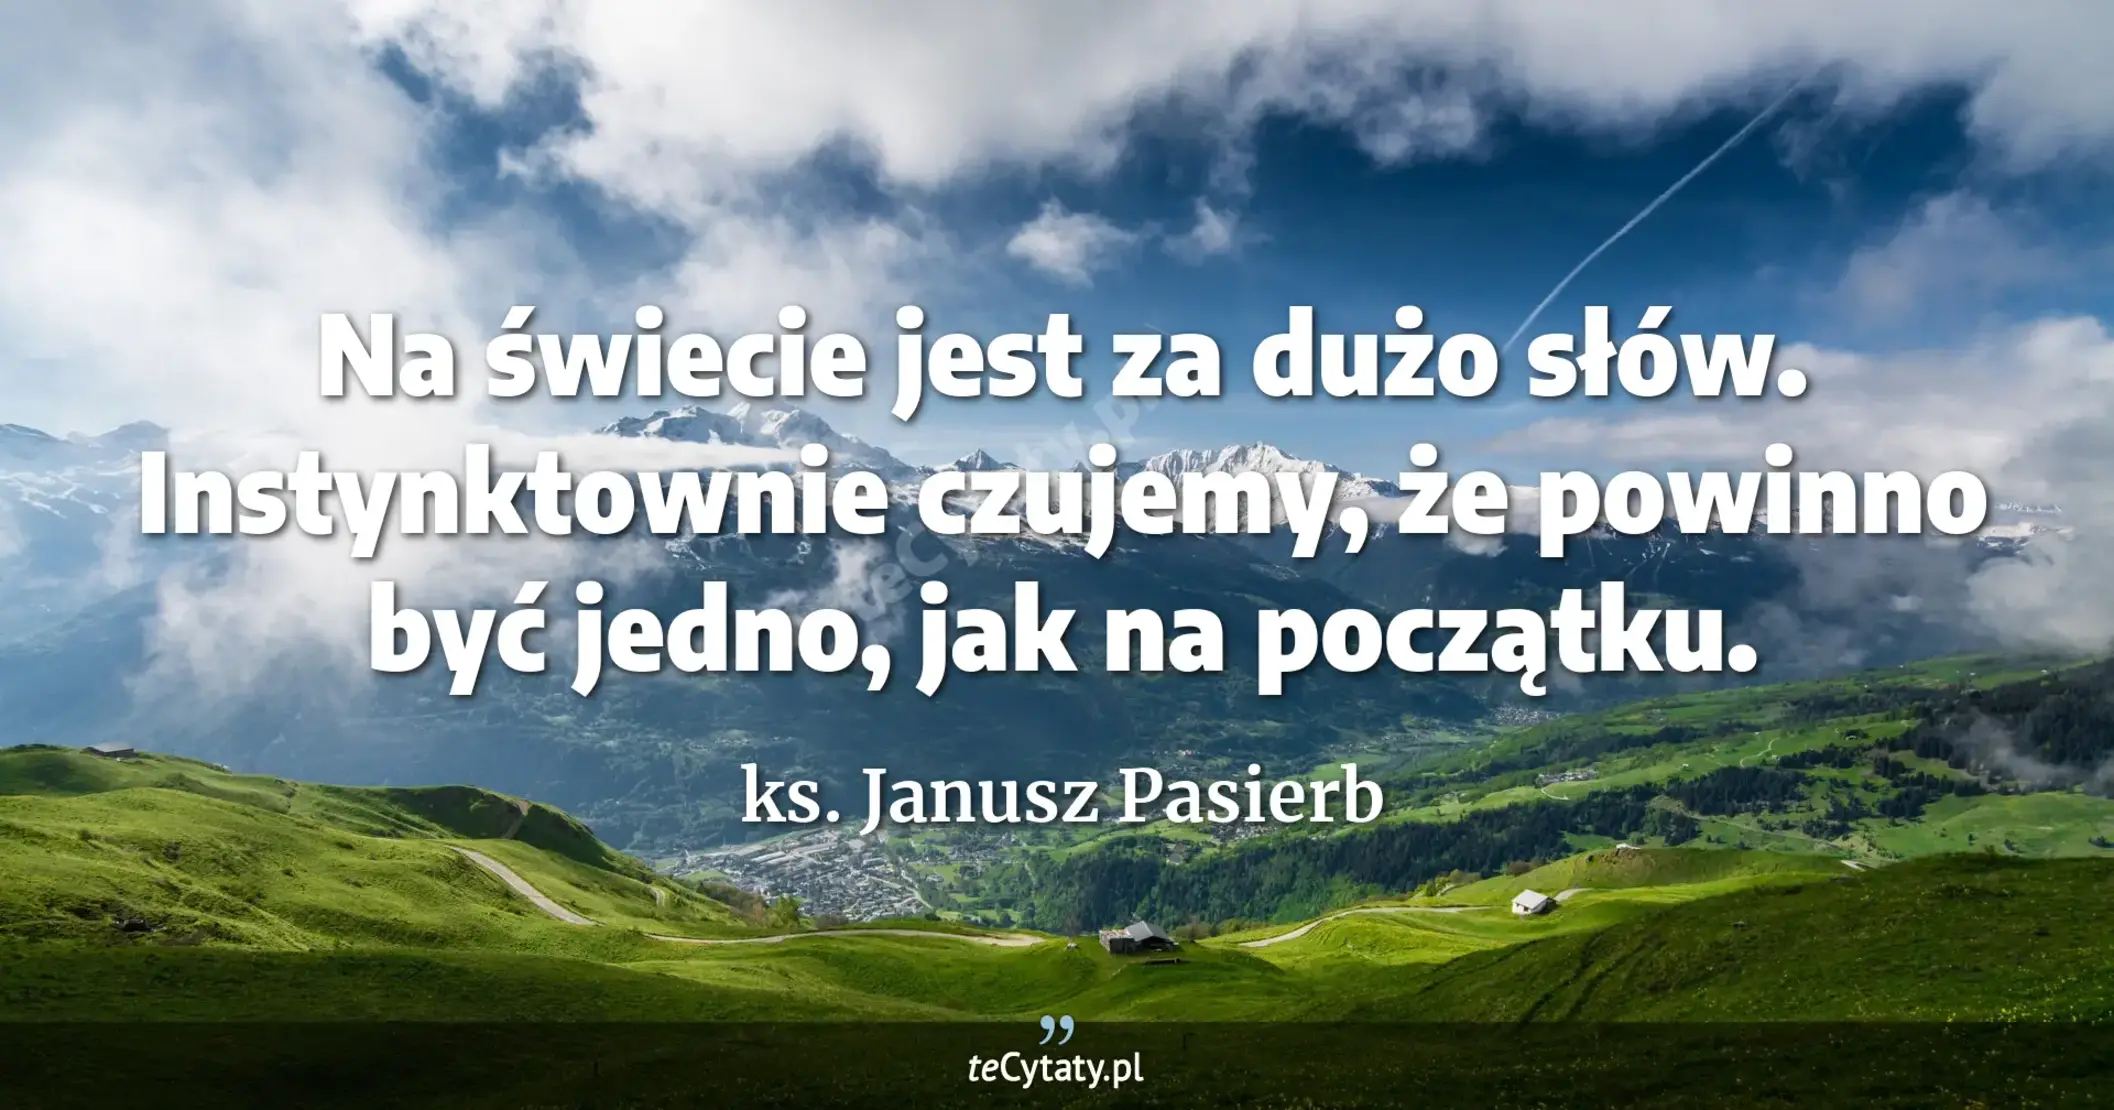 Na świecie jest za dużo słów. Instynktownie czujemy, że powinno być jedno, jak na początku. - ks. Janusz Pasierb